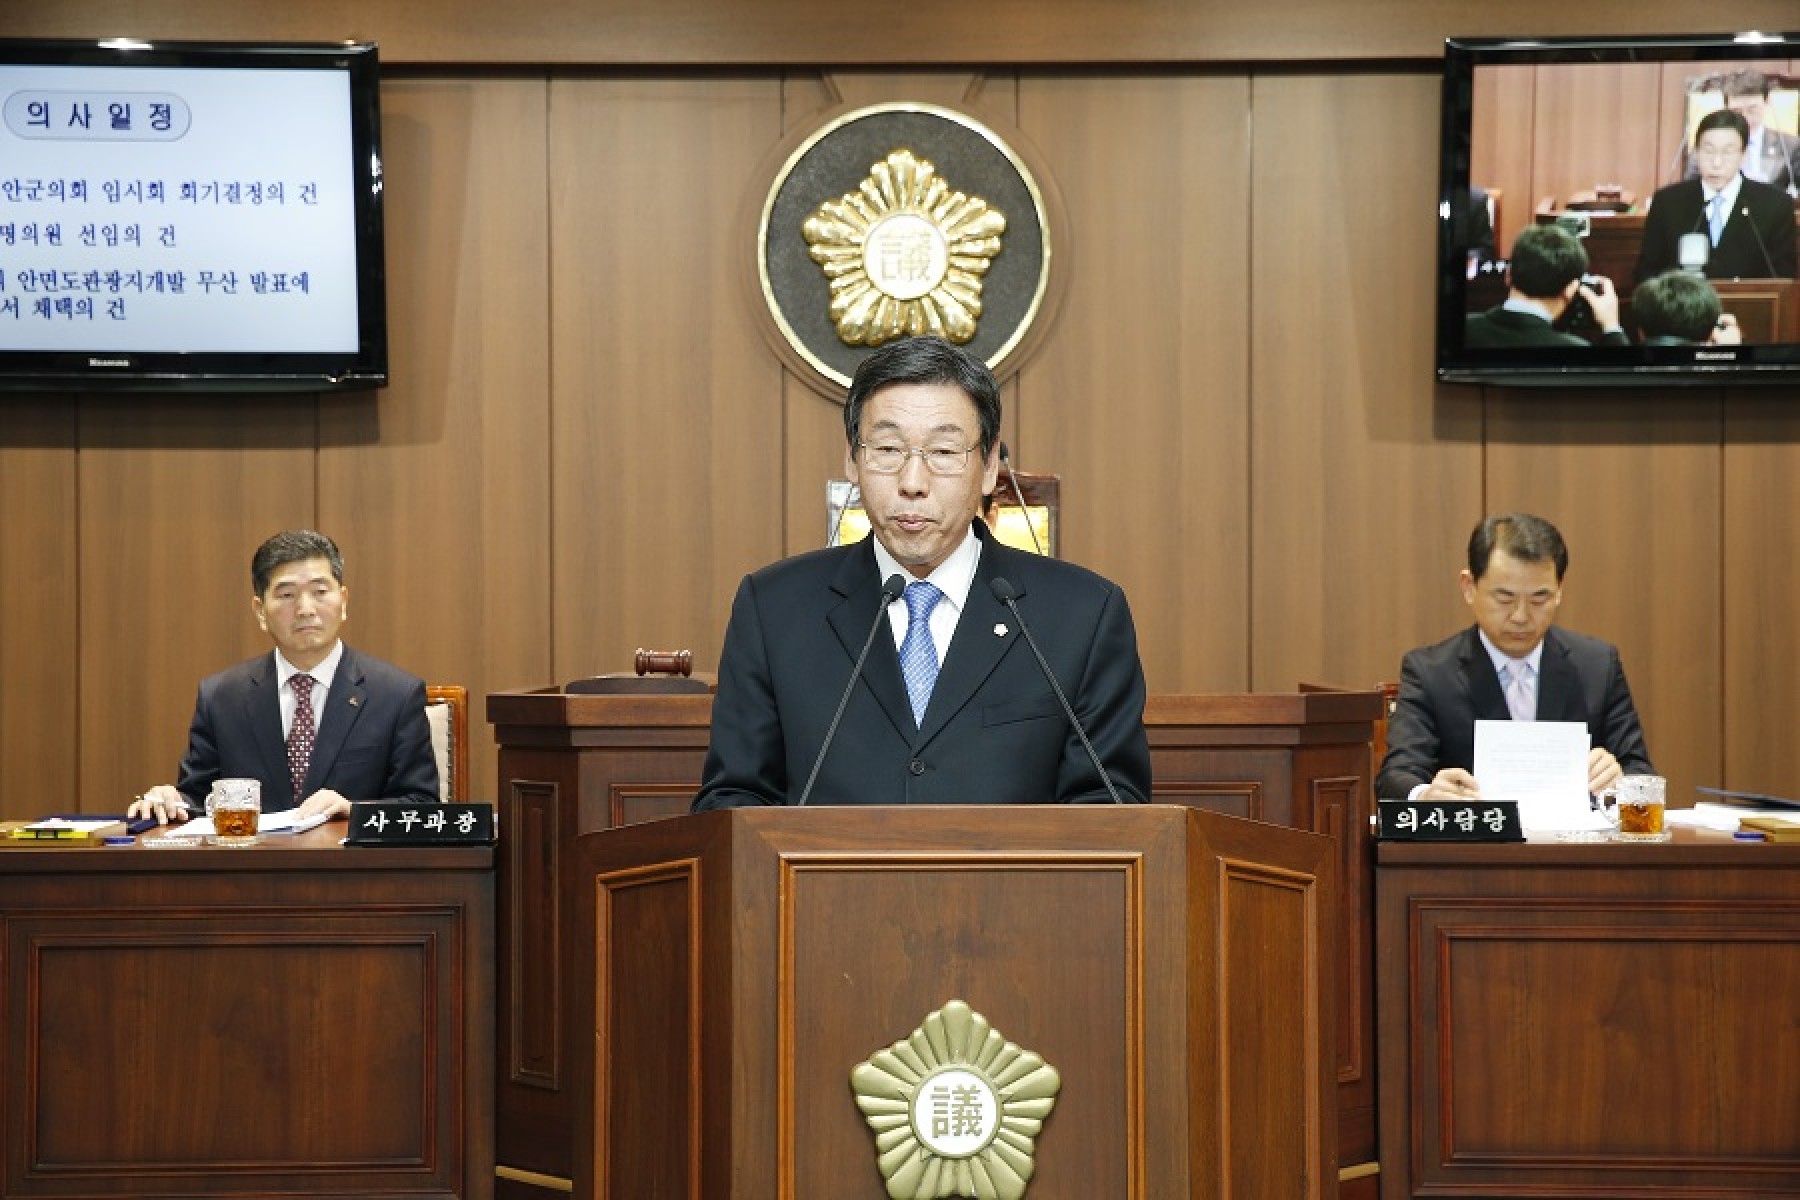 태안군의회, 안면도관광지개발 관련 성명서 발표